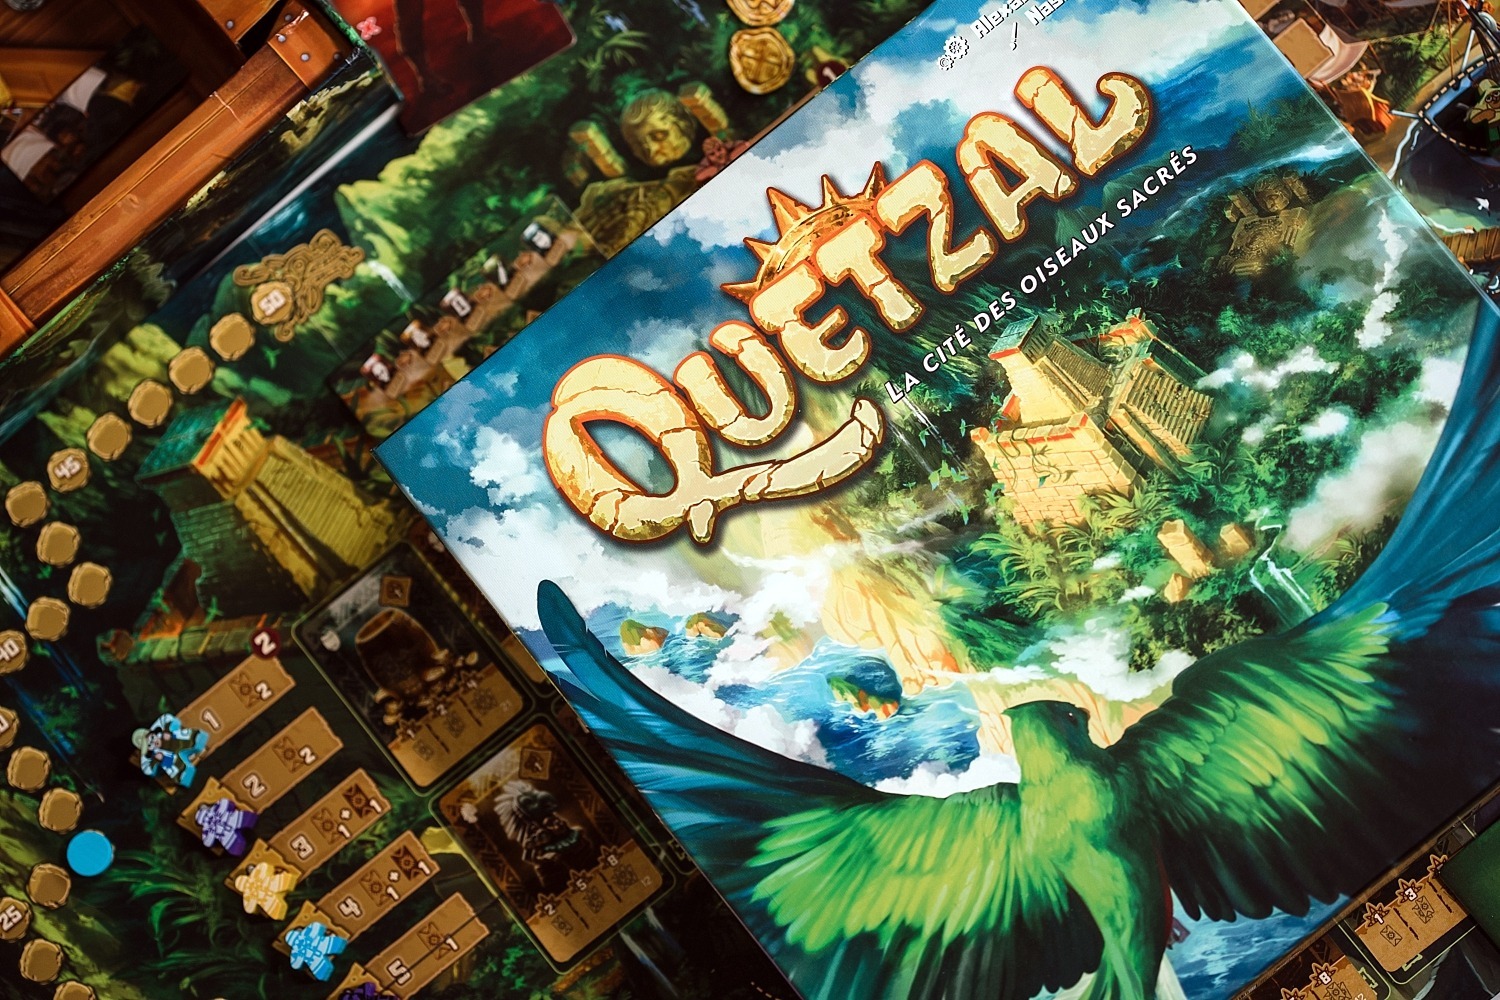 Quetzal Gigamic
Jeu de société 
Boardgame